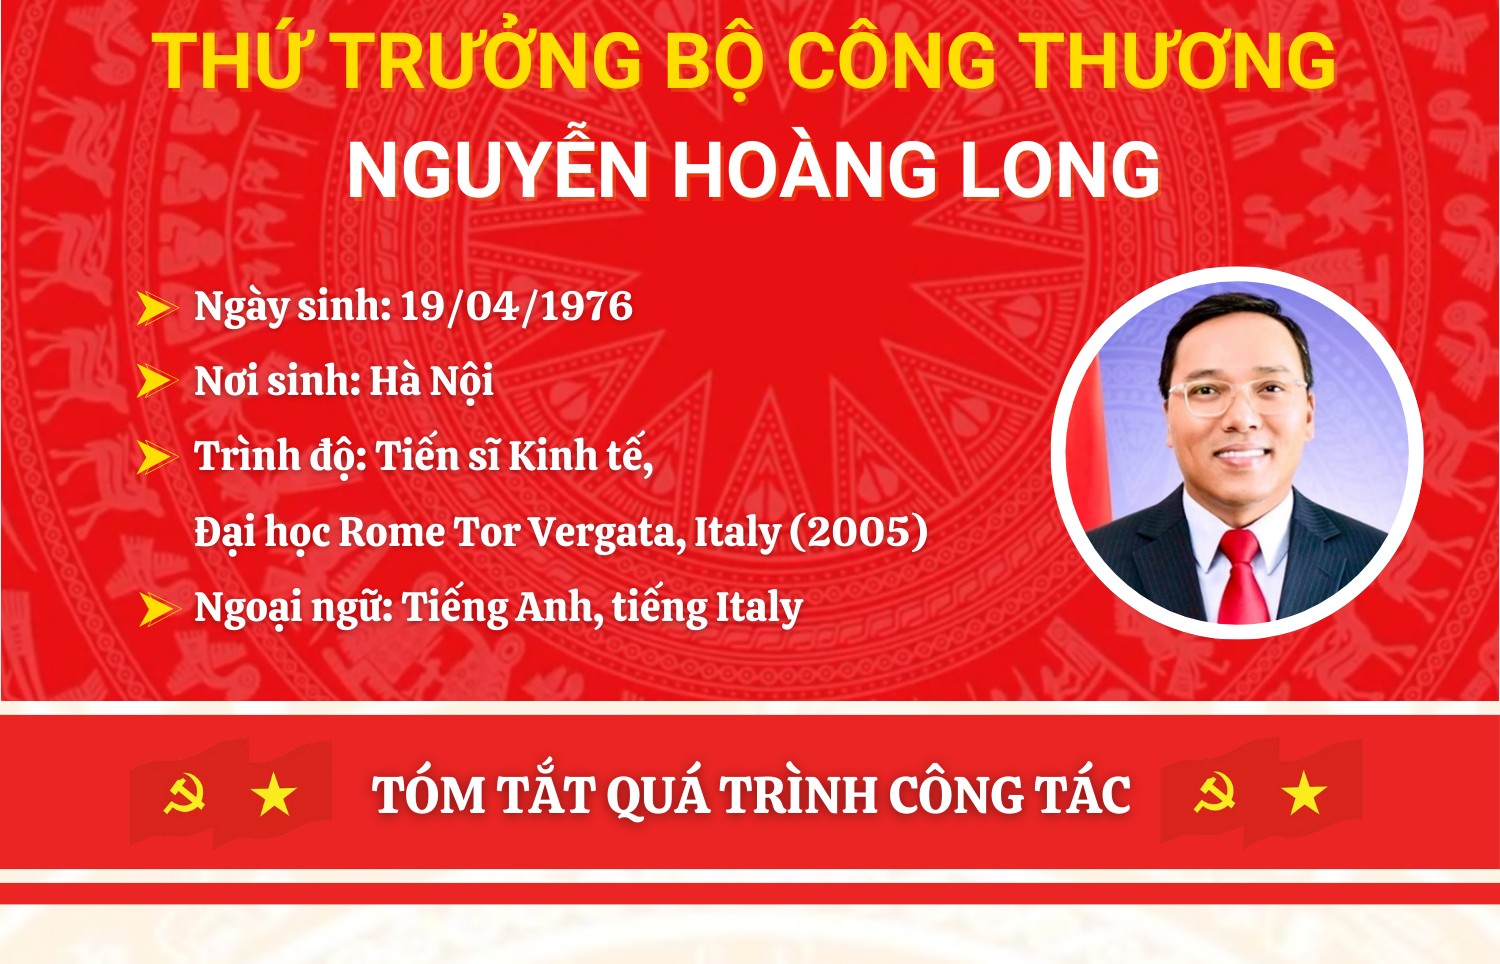 infographic tieu su tan thu truong bo cong thuong nguyen hoang long